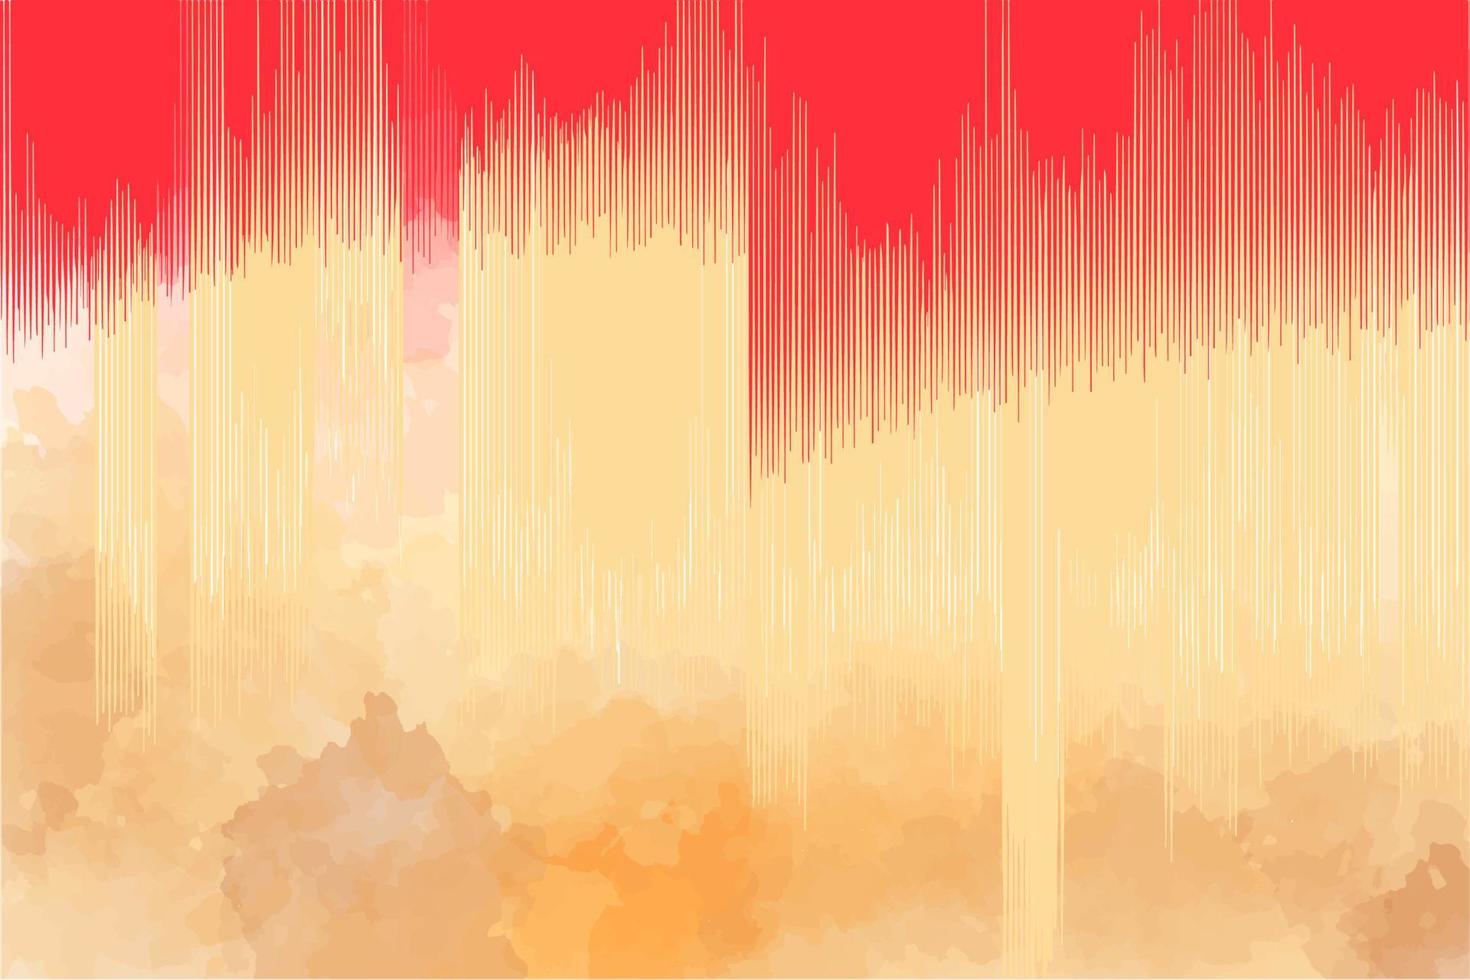 aquarellmusikhintergrund, mit geometrischen streifen, in roten und beigen farben, farblinien, kunst, hintergrund für ein banner vektor